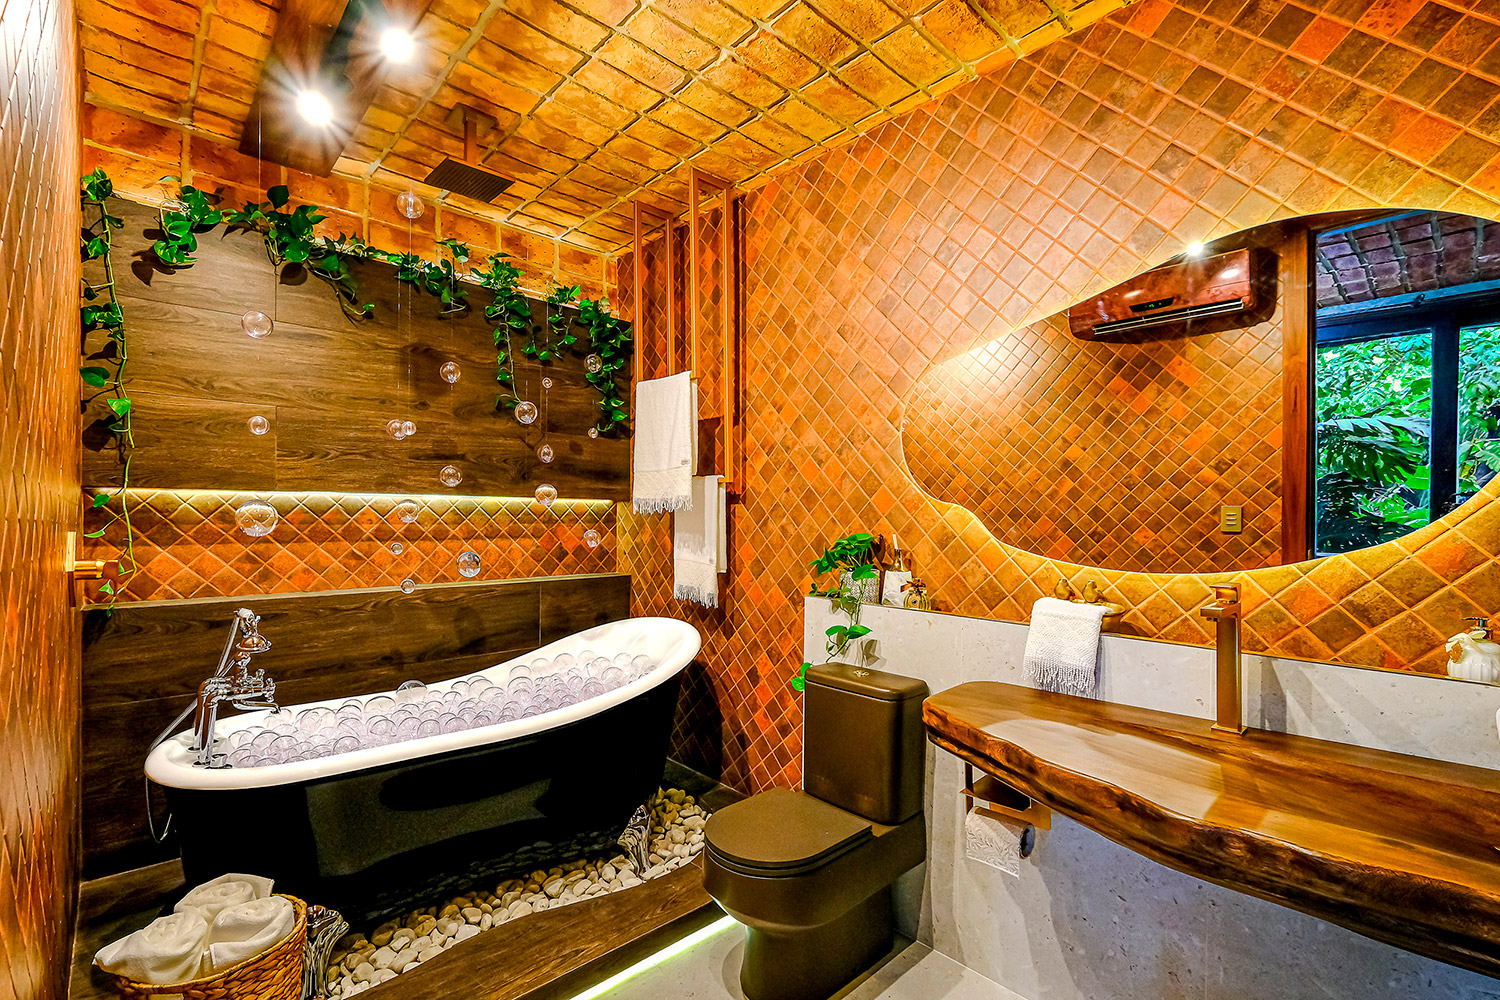 casacor bolivia decor decoração arquitetura 2021 mostras baño banheiro relax yara muyuro